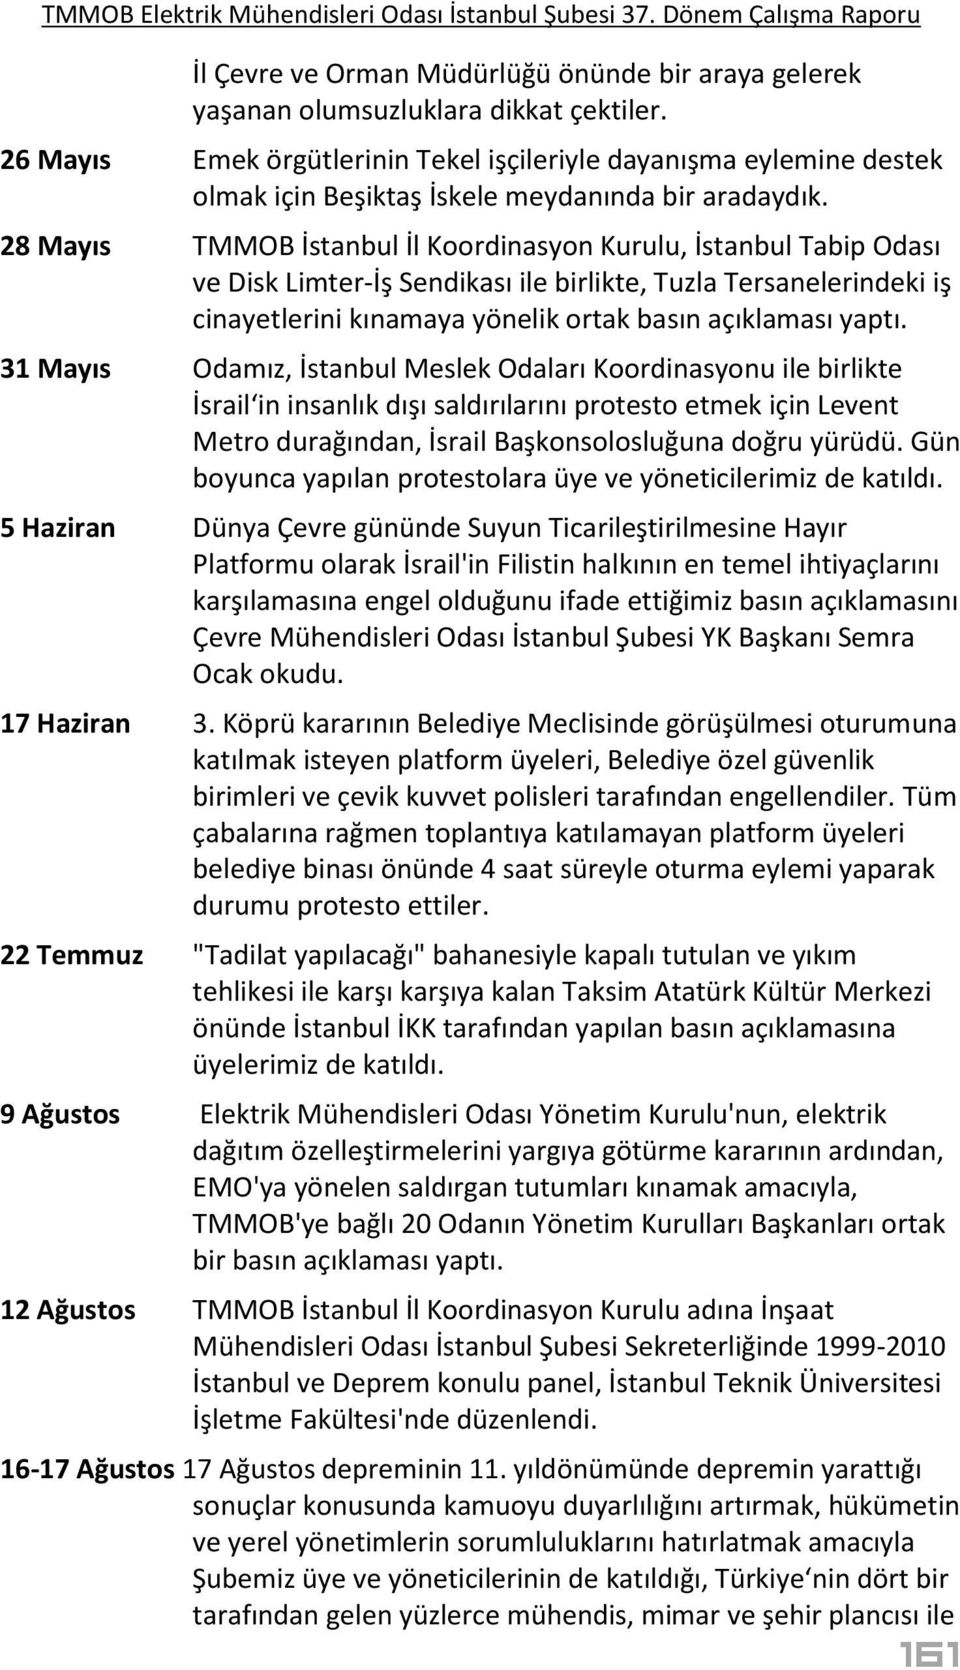 28 Mayıs TMMOB İstanbul İl Koordinasyon Kurulu, İstanbul Tabip Odası ve Disk Limter-İş Sendikası ile birlikte, Tuzla Tersanelerindeki iş cinayetlerini kınamaya yönelik ortak basın açıklaması yaptı.